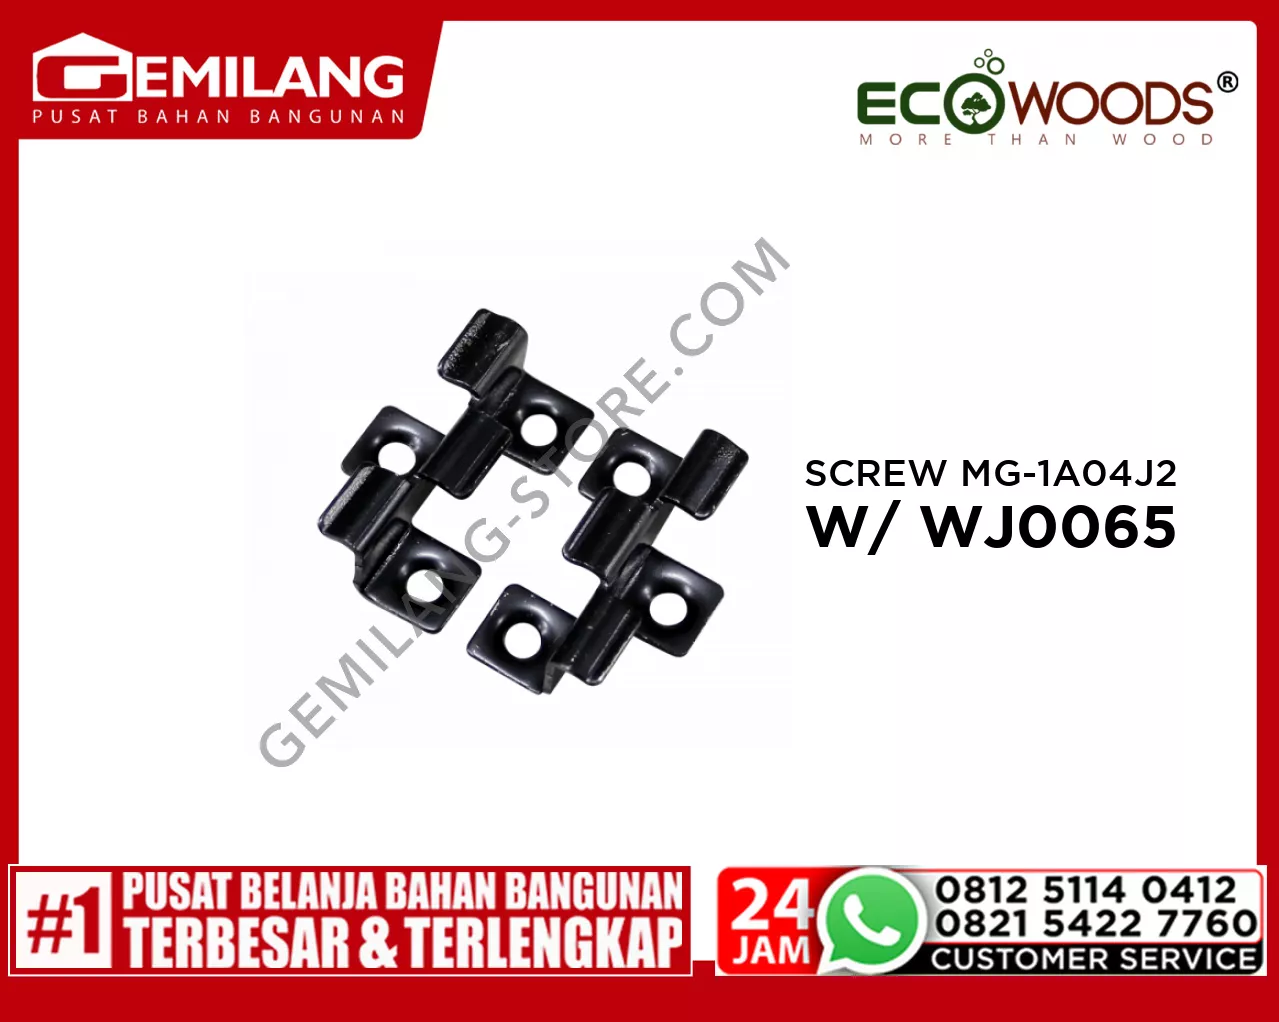 ECOWOOD SCREW MG-1A-04-J2 WITH WJ0065 (40 x 23.8 x 11.9)/2PC